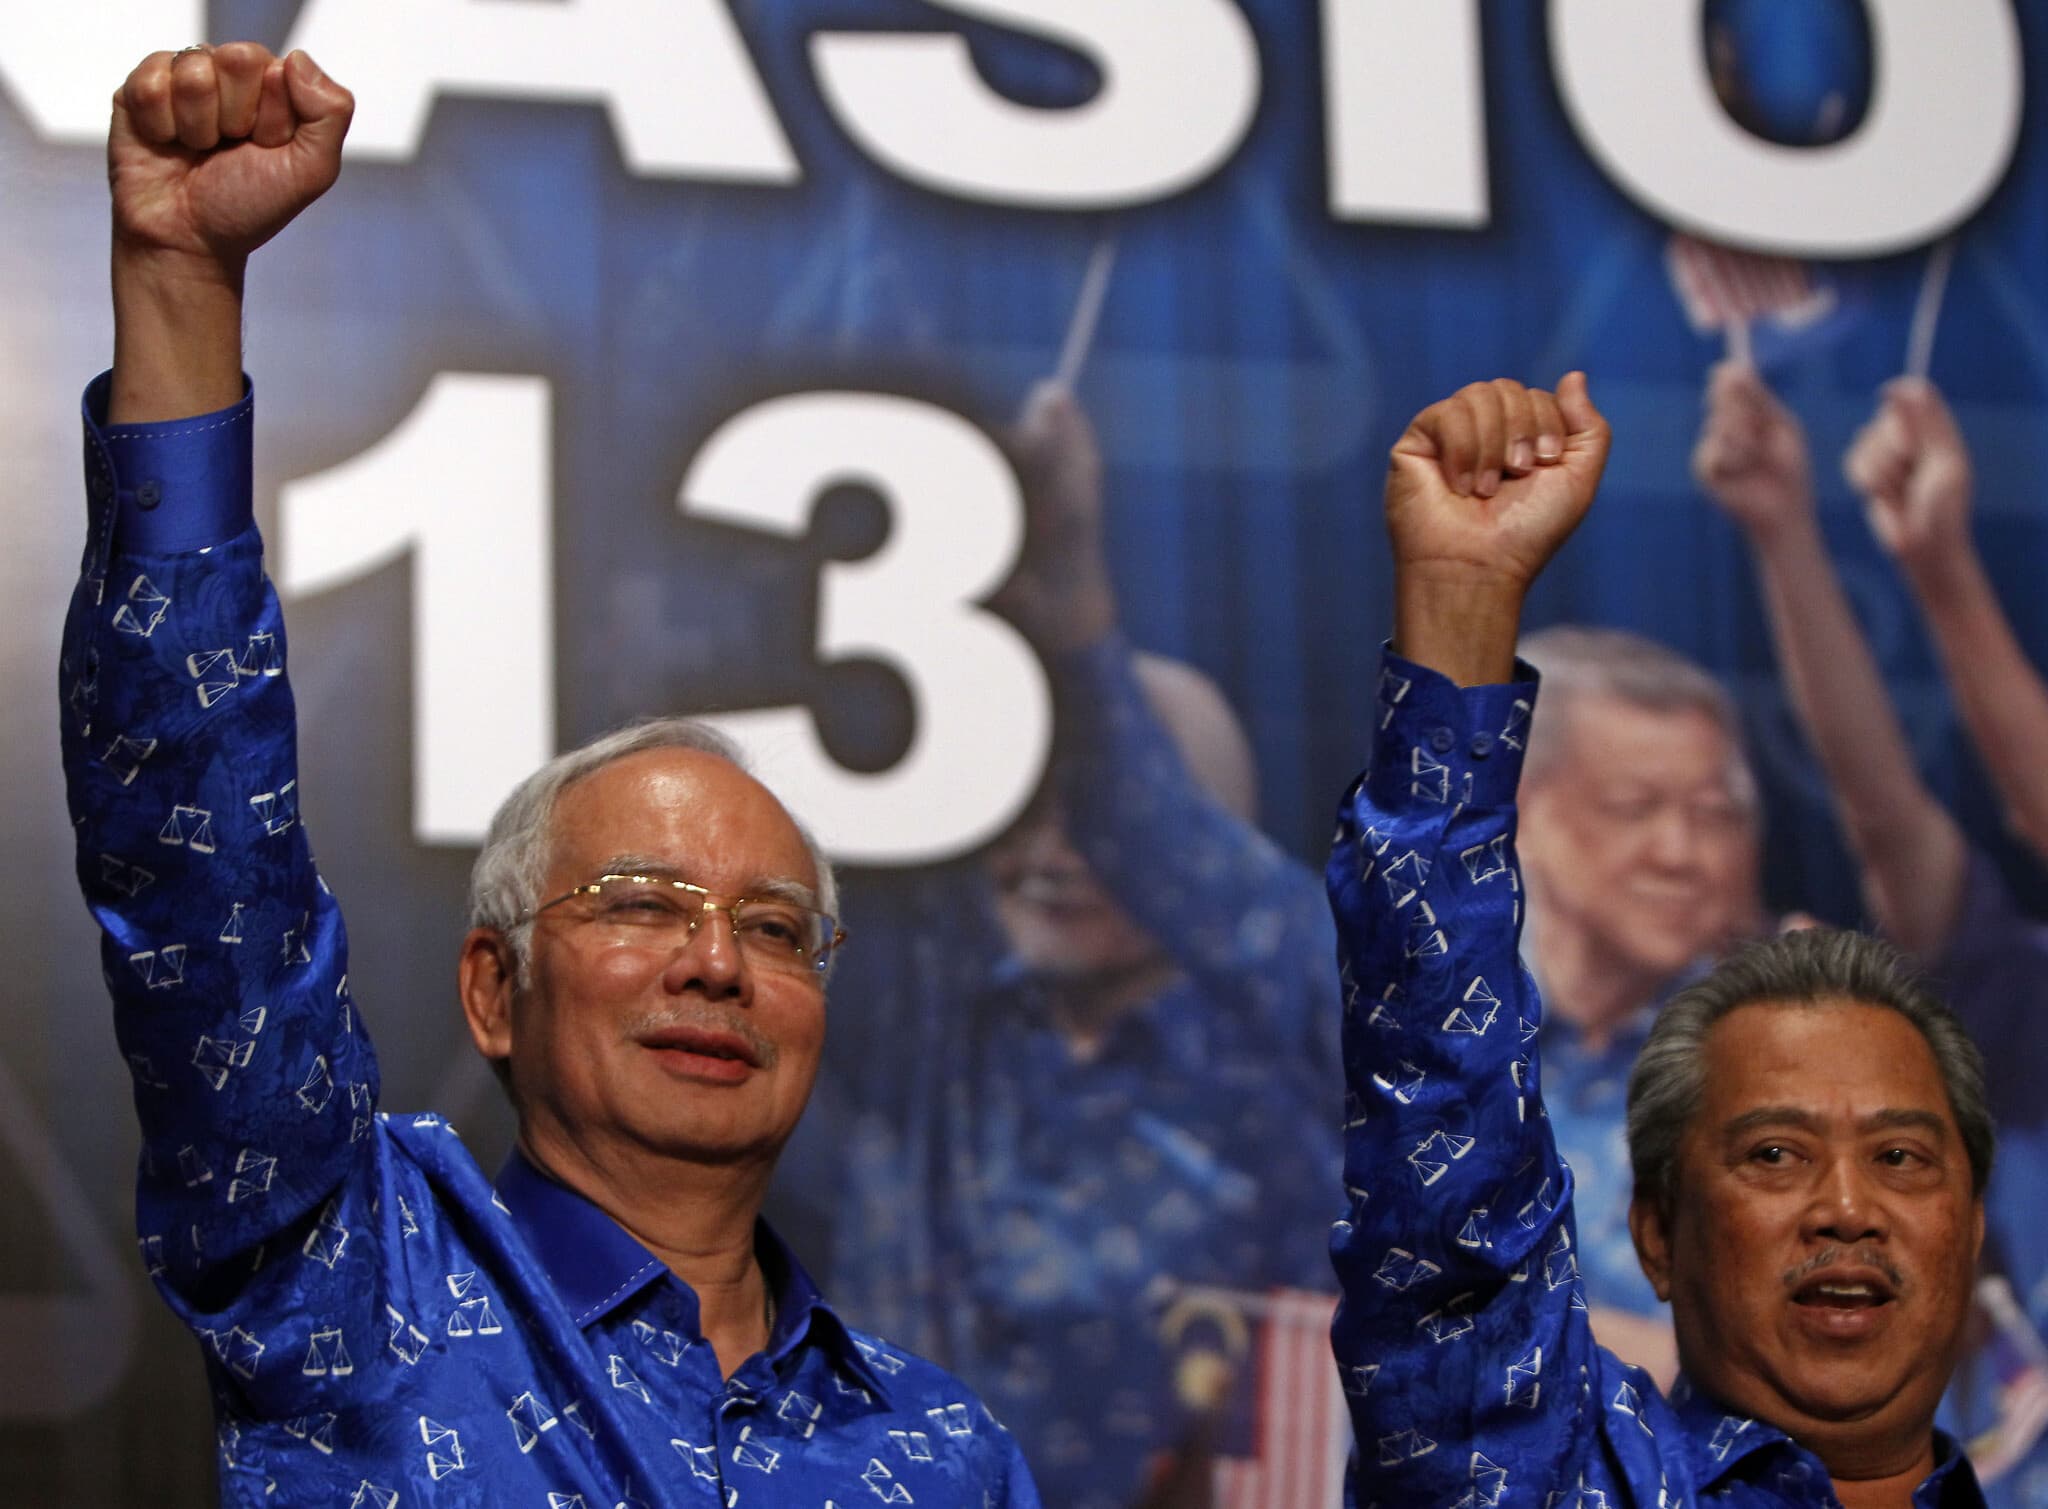 ראש ממשלת מלזיה, נג'יב רזאק, וסגנו מוהידין יאסין חוגגים לאחר שניצחו בבחירות ב-2013 (צילום: AP Photo/Lai Seng Sin)